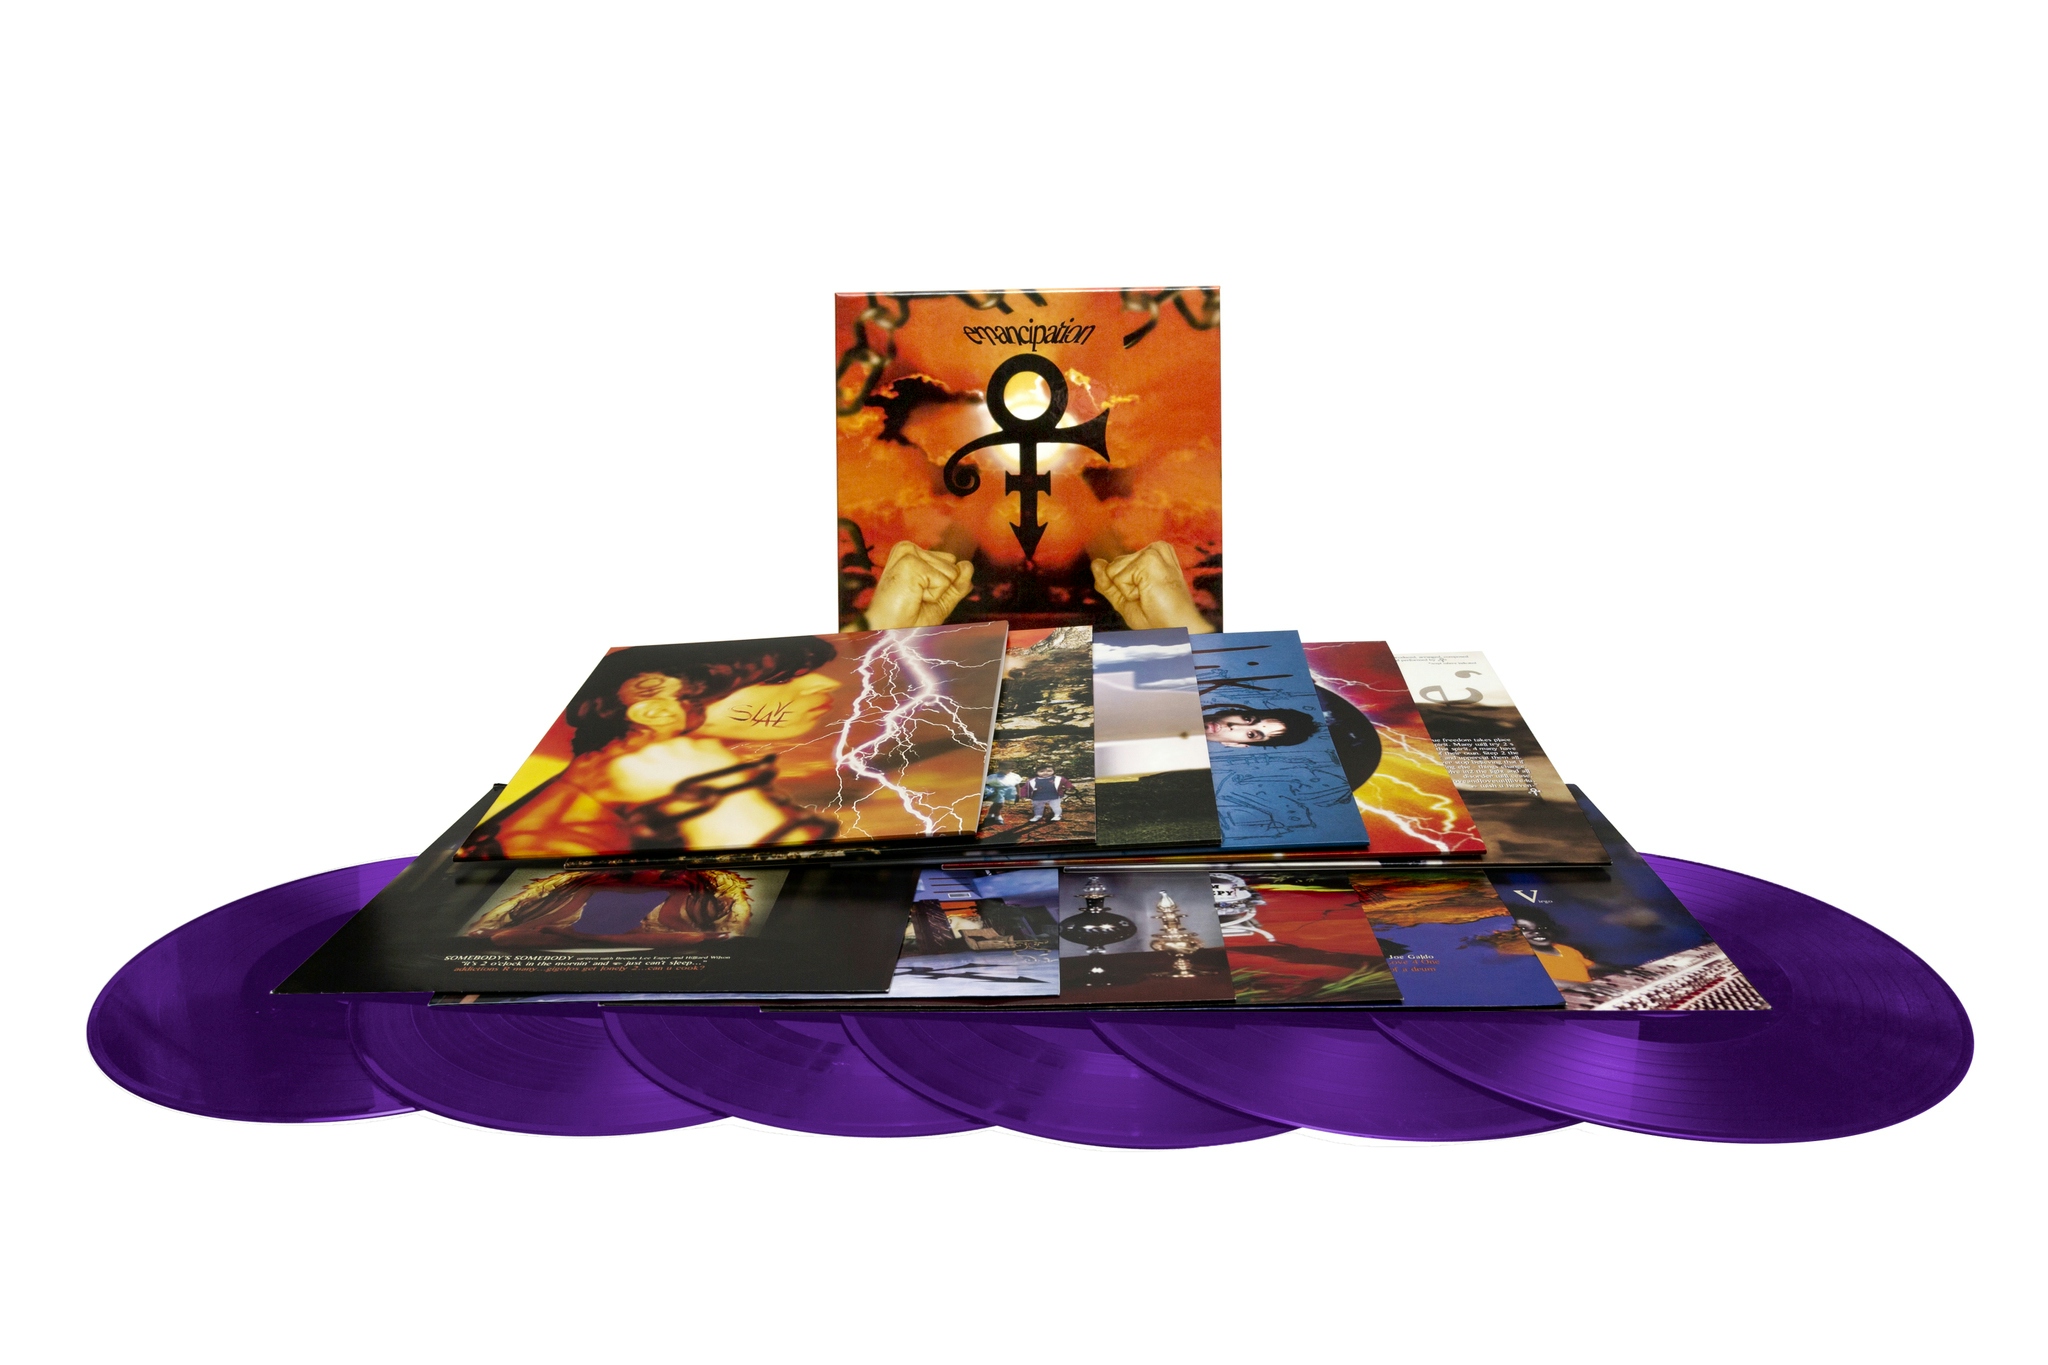 Album artwork for Emancipation by Prince